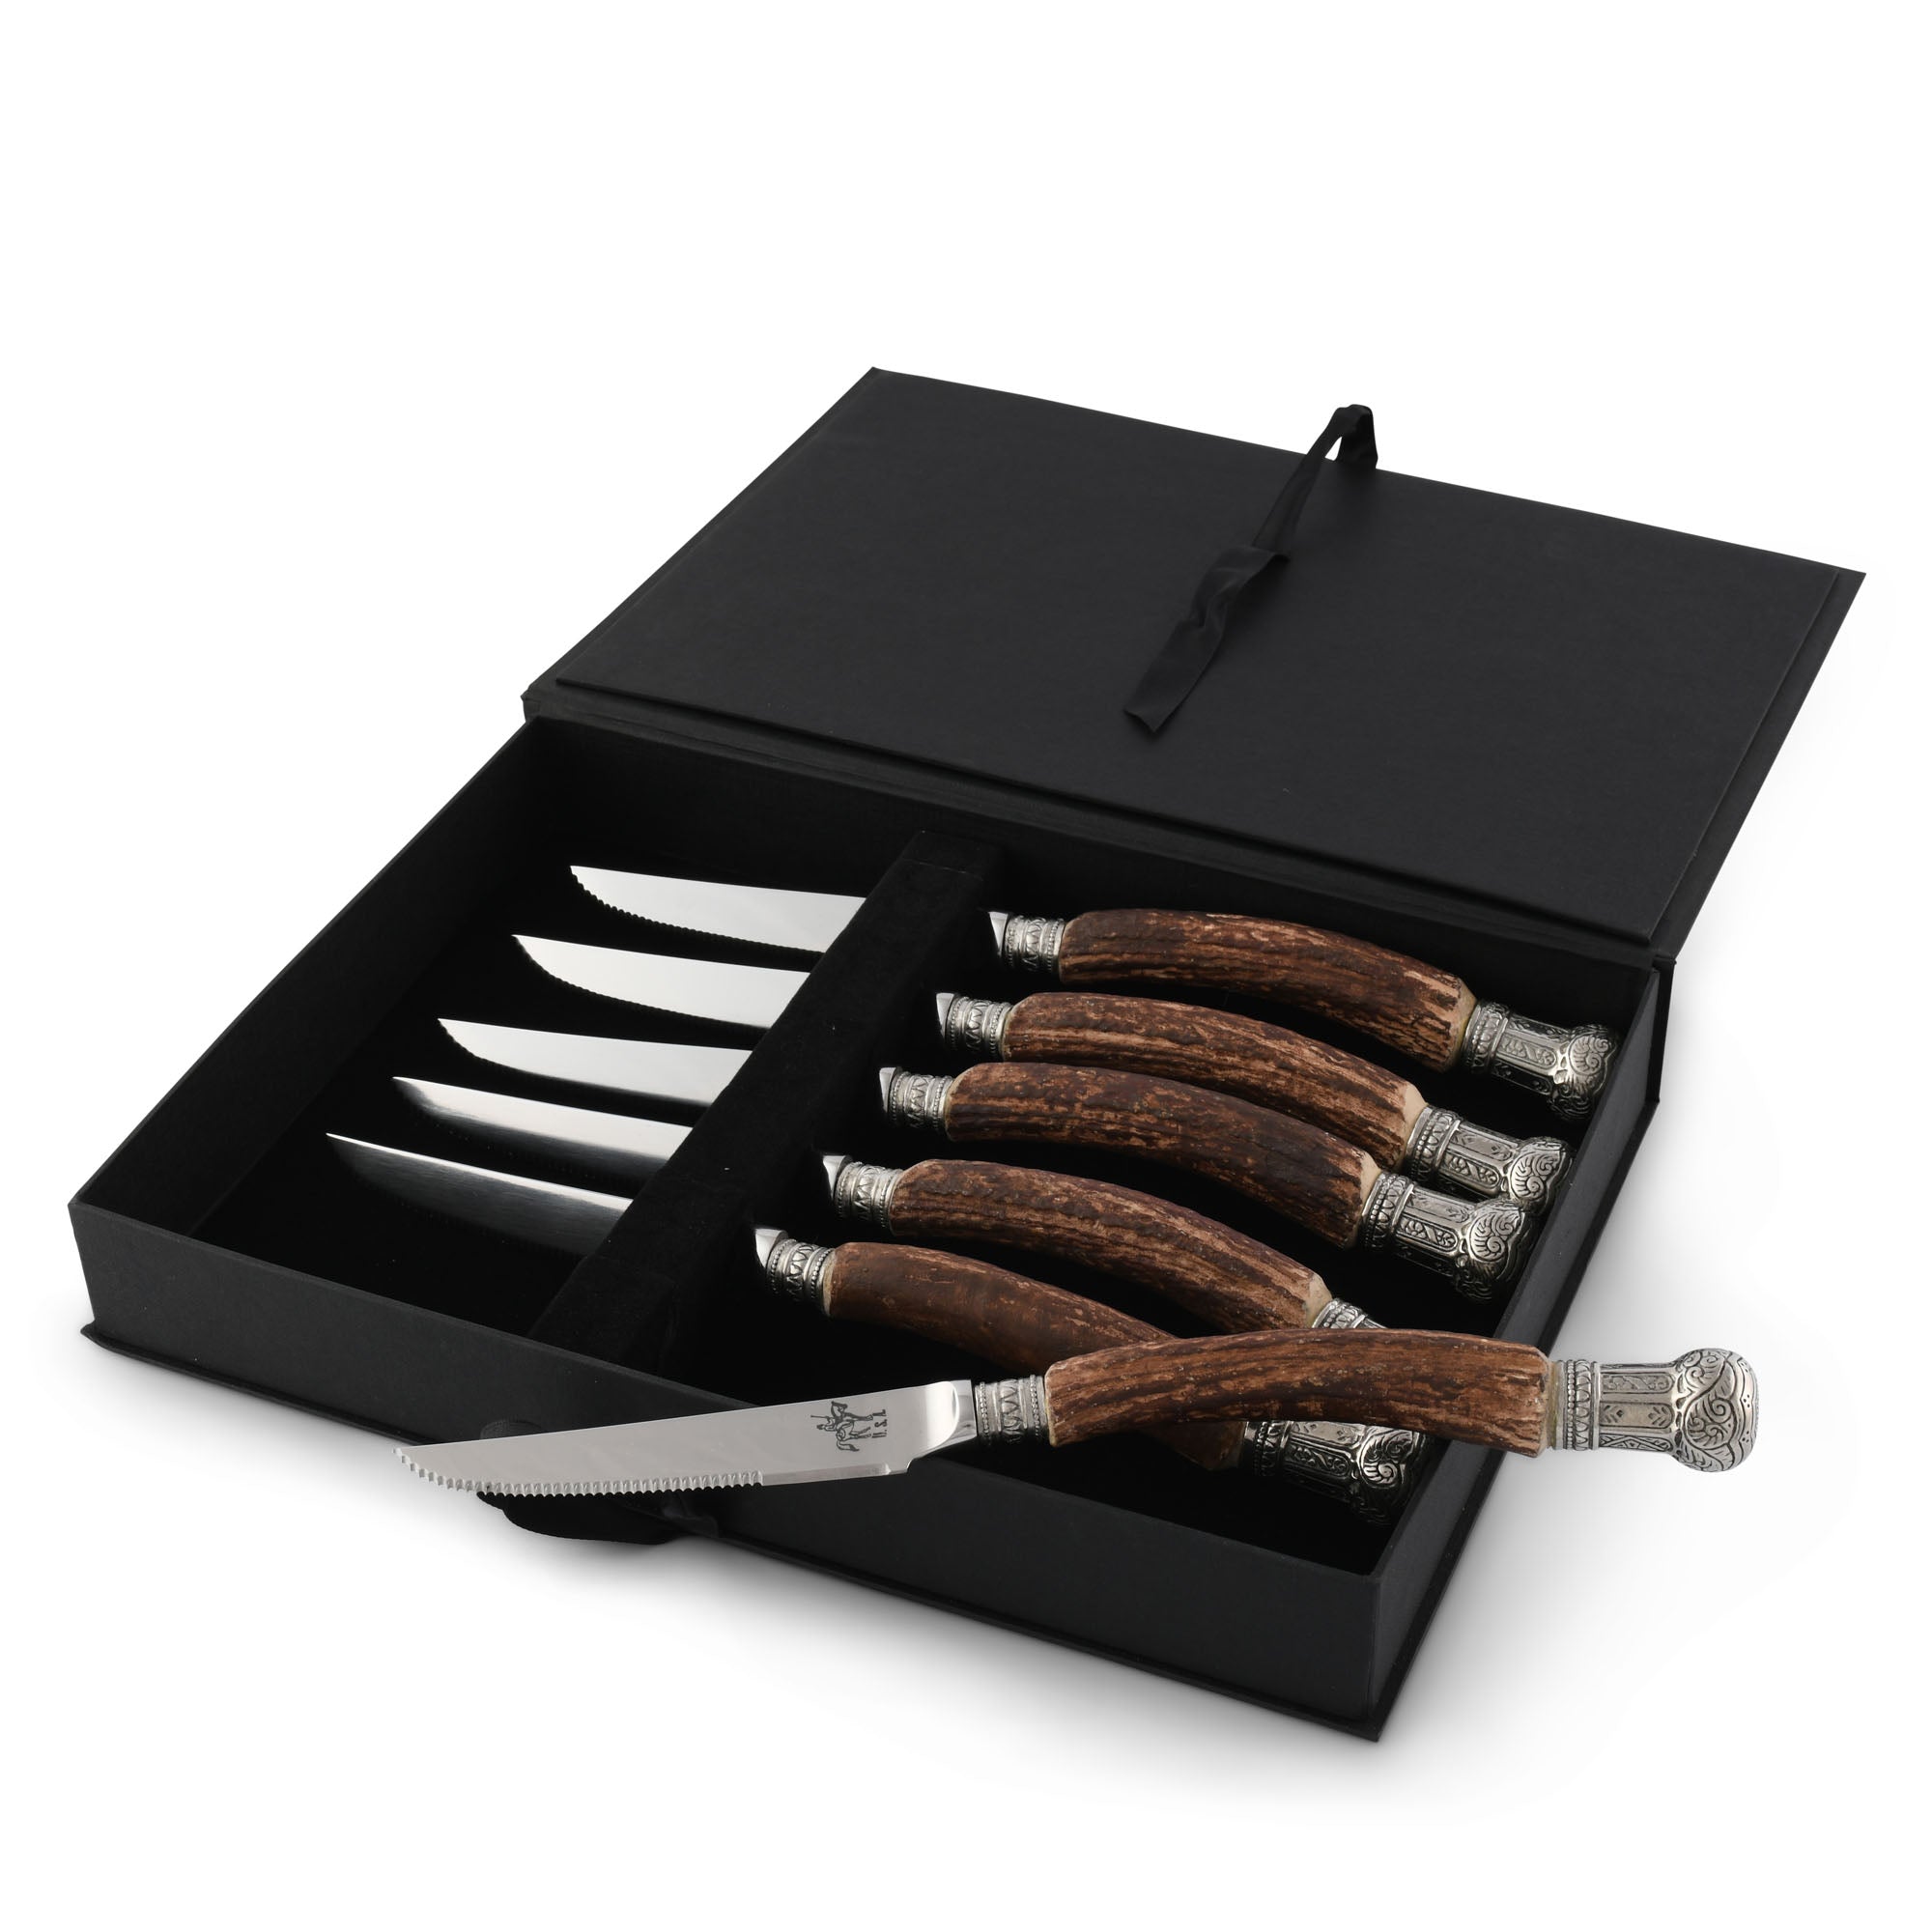 Vagabond House Composite Antler King Crown Steak Knife Set Product Image